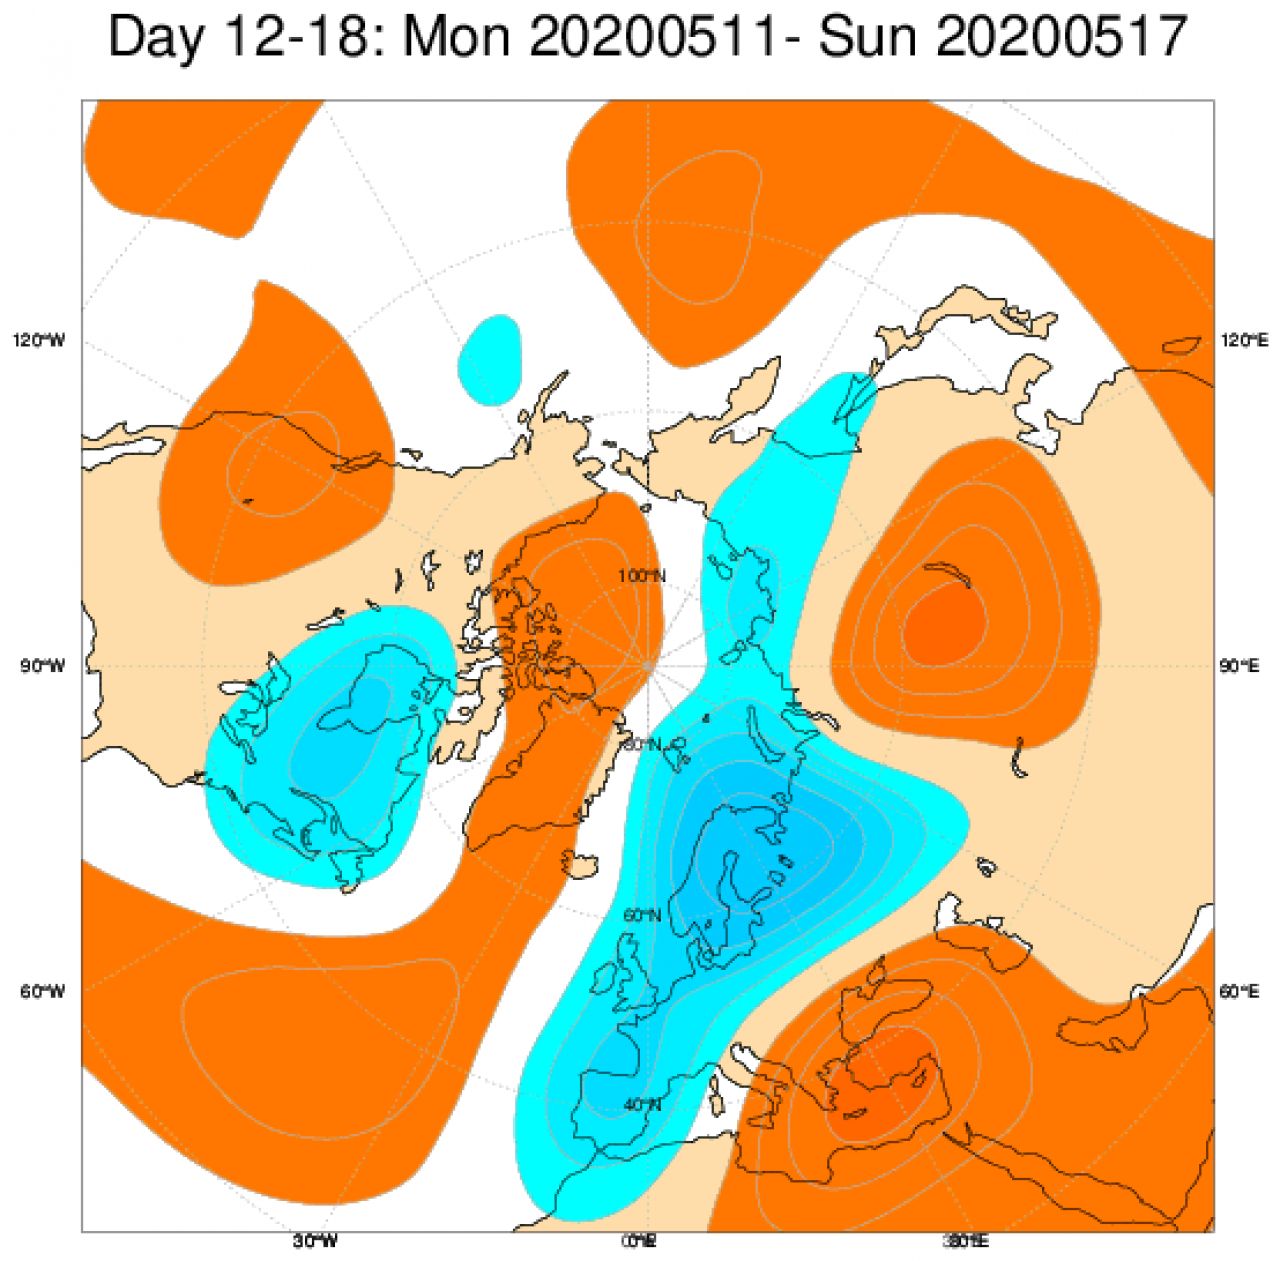 Le anomalie di geopotenziale mediate sul periodo 11-18 maggio secondo il modello ECMWF